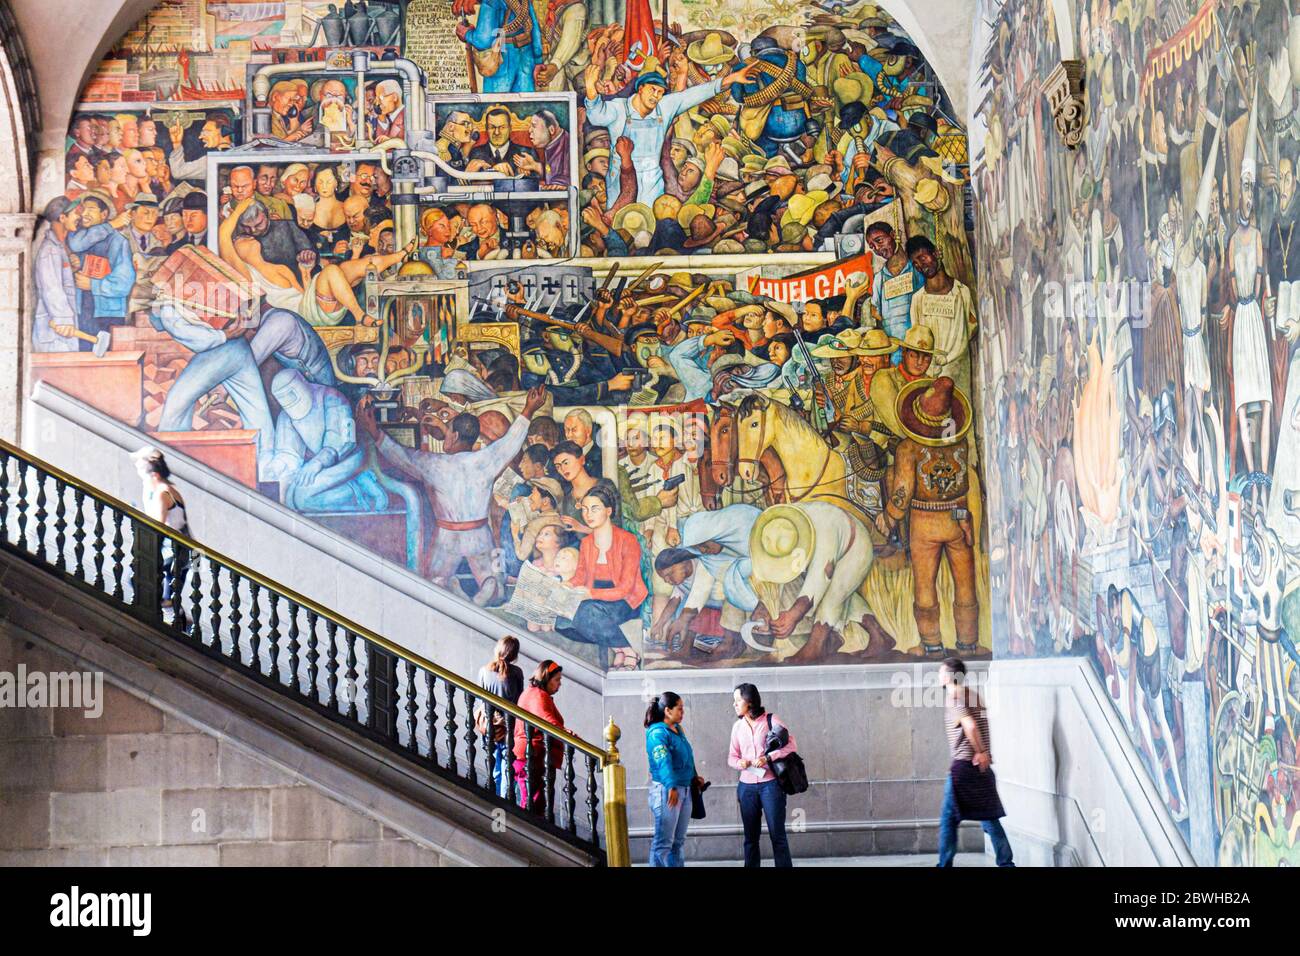 Mexico City,DF México,Federal District,Distrito Federal,Centro historico,Zocalo,Plaza de la Constitucion,Palacio Nacional,National Palace,mural,Mexica Stock Photo